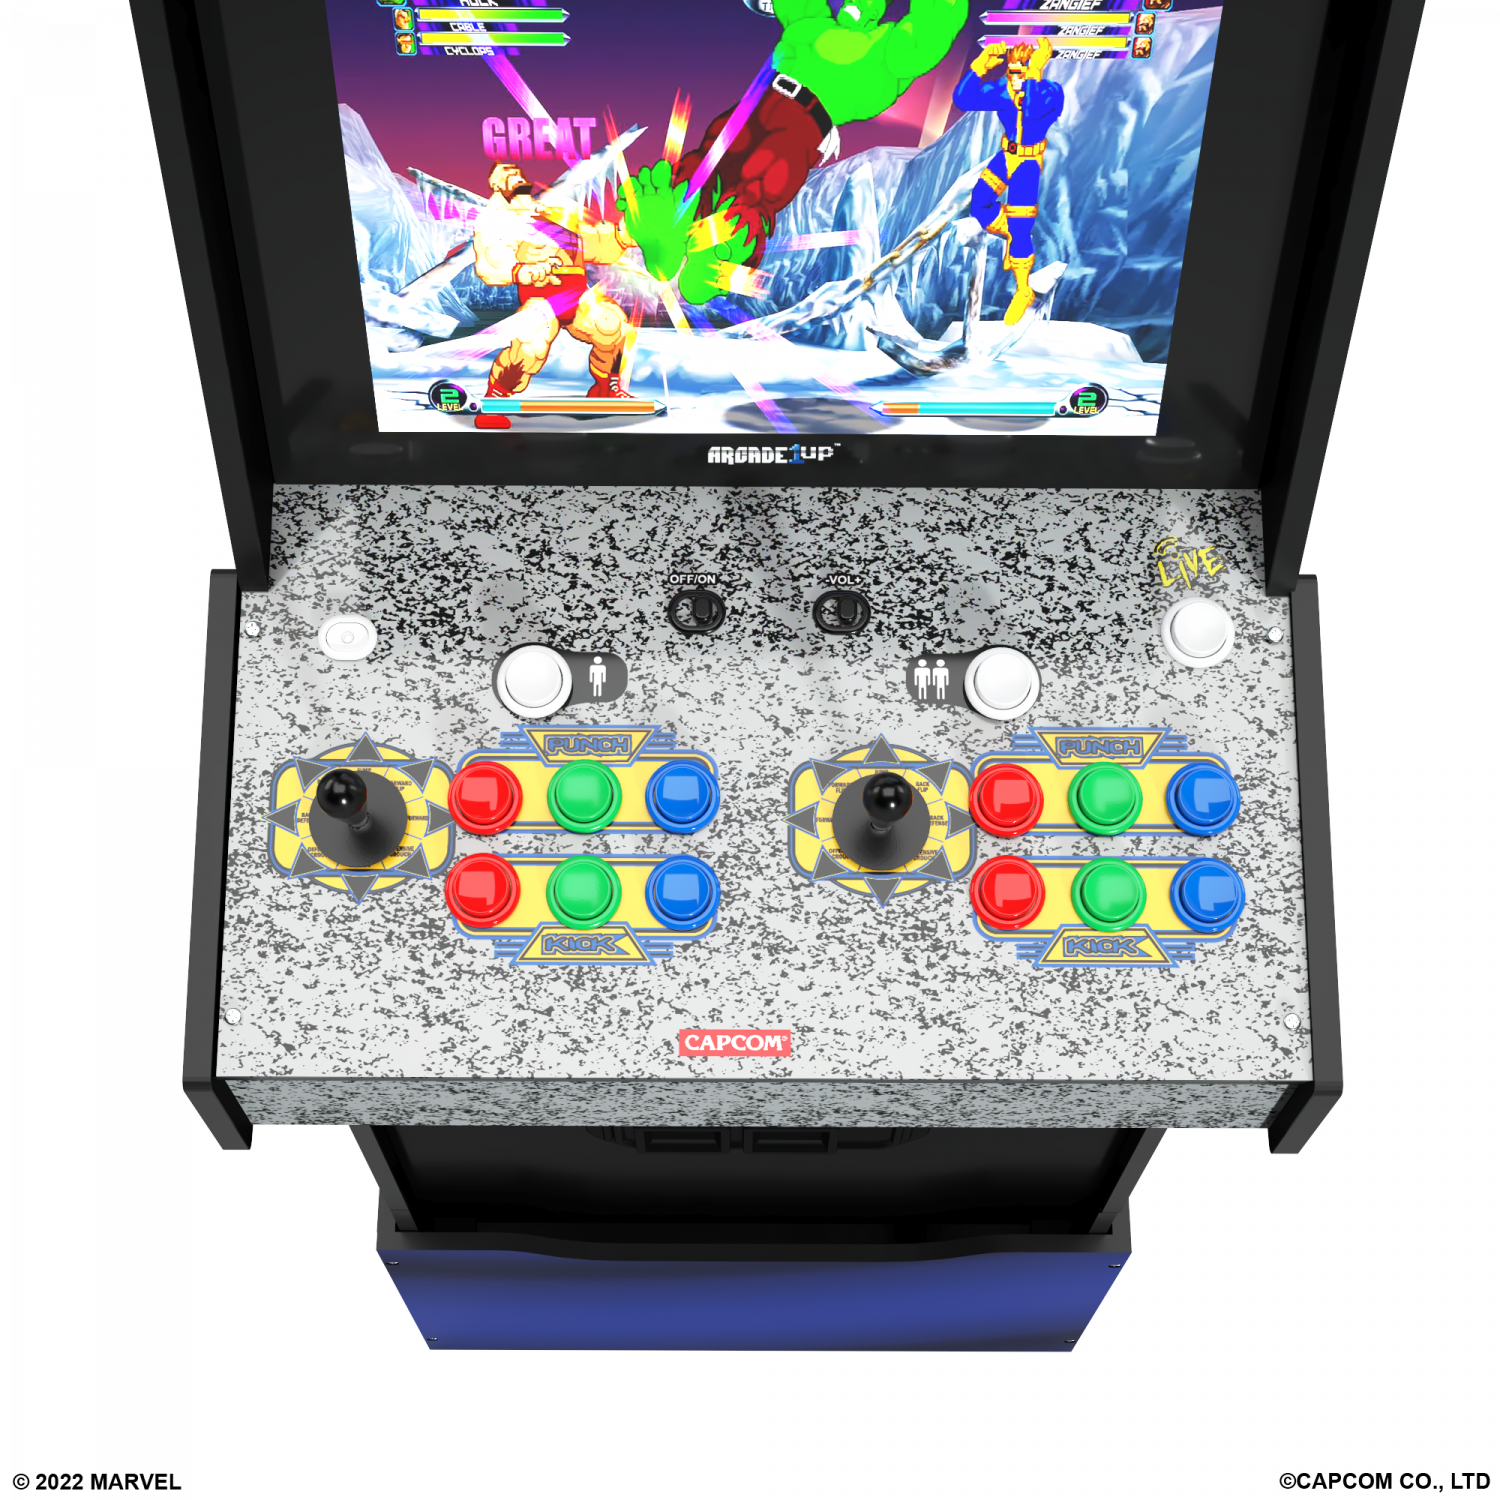 ARCADE 1 Up Marvel Vs Capcom 2 Arcade Machine